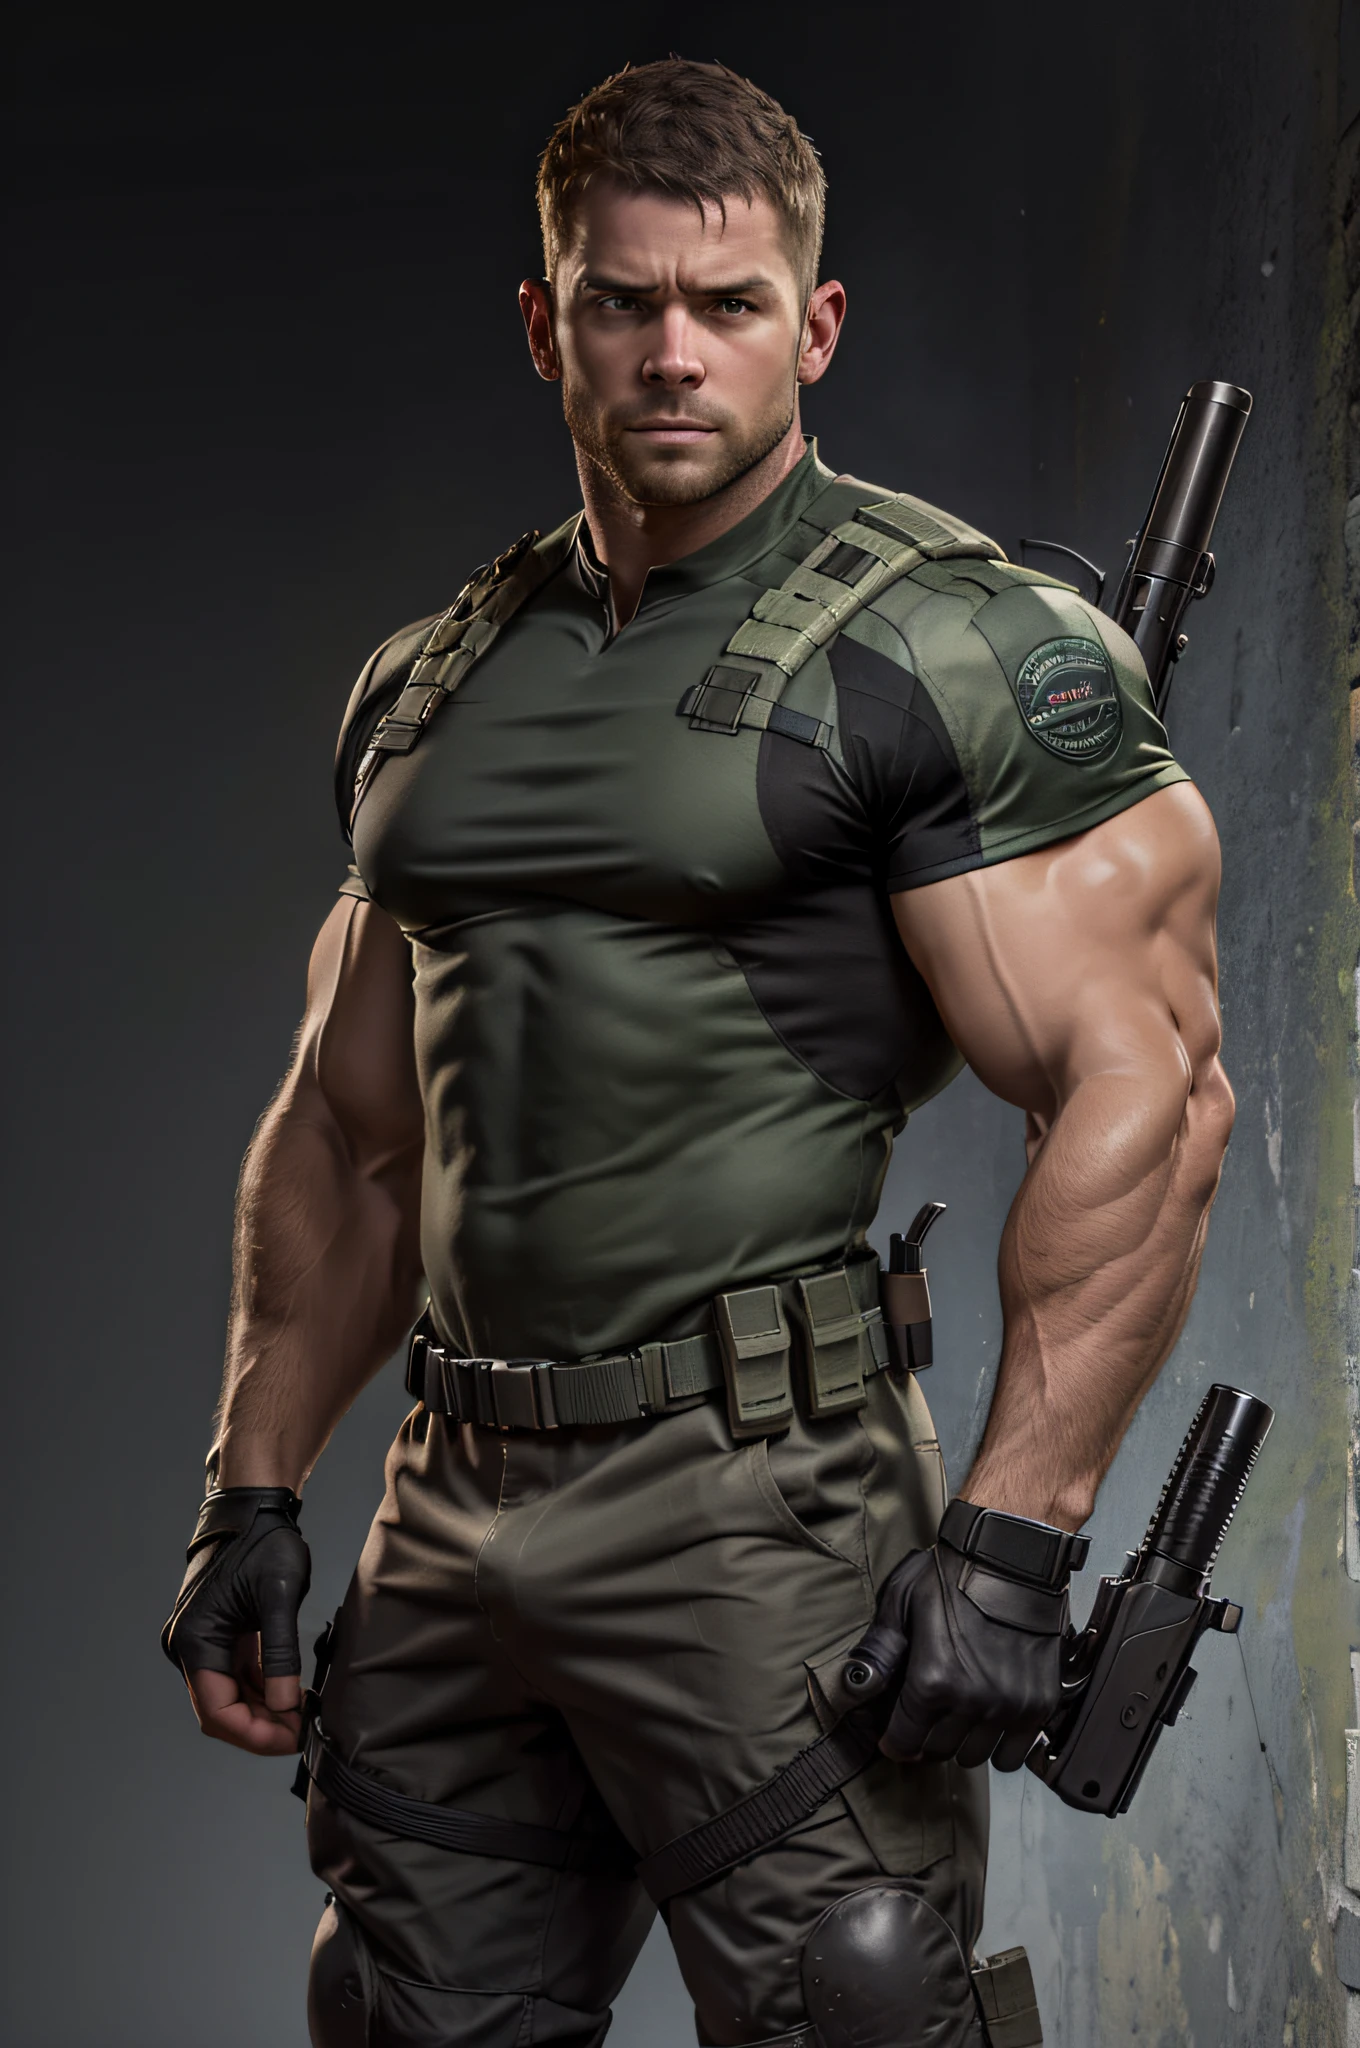 1 人, 獨自的, 35歲, 克里斯·雷德菲爾德, 穿著綠色T卹, 嚴肅的臉, 看著相機, 肩部白色，肩部有 bsaa 標誌, 軍事戰術服, 裝置, (2只手拿着手枪), 又高又壯, 二头肌, 腹肌, 胸部, 最好的品質, 傑作, 高解析度:1.2, 上身照, 深黑色陰沉的走廊，沒有背景